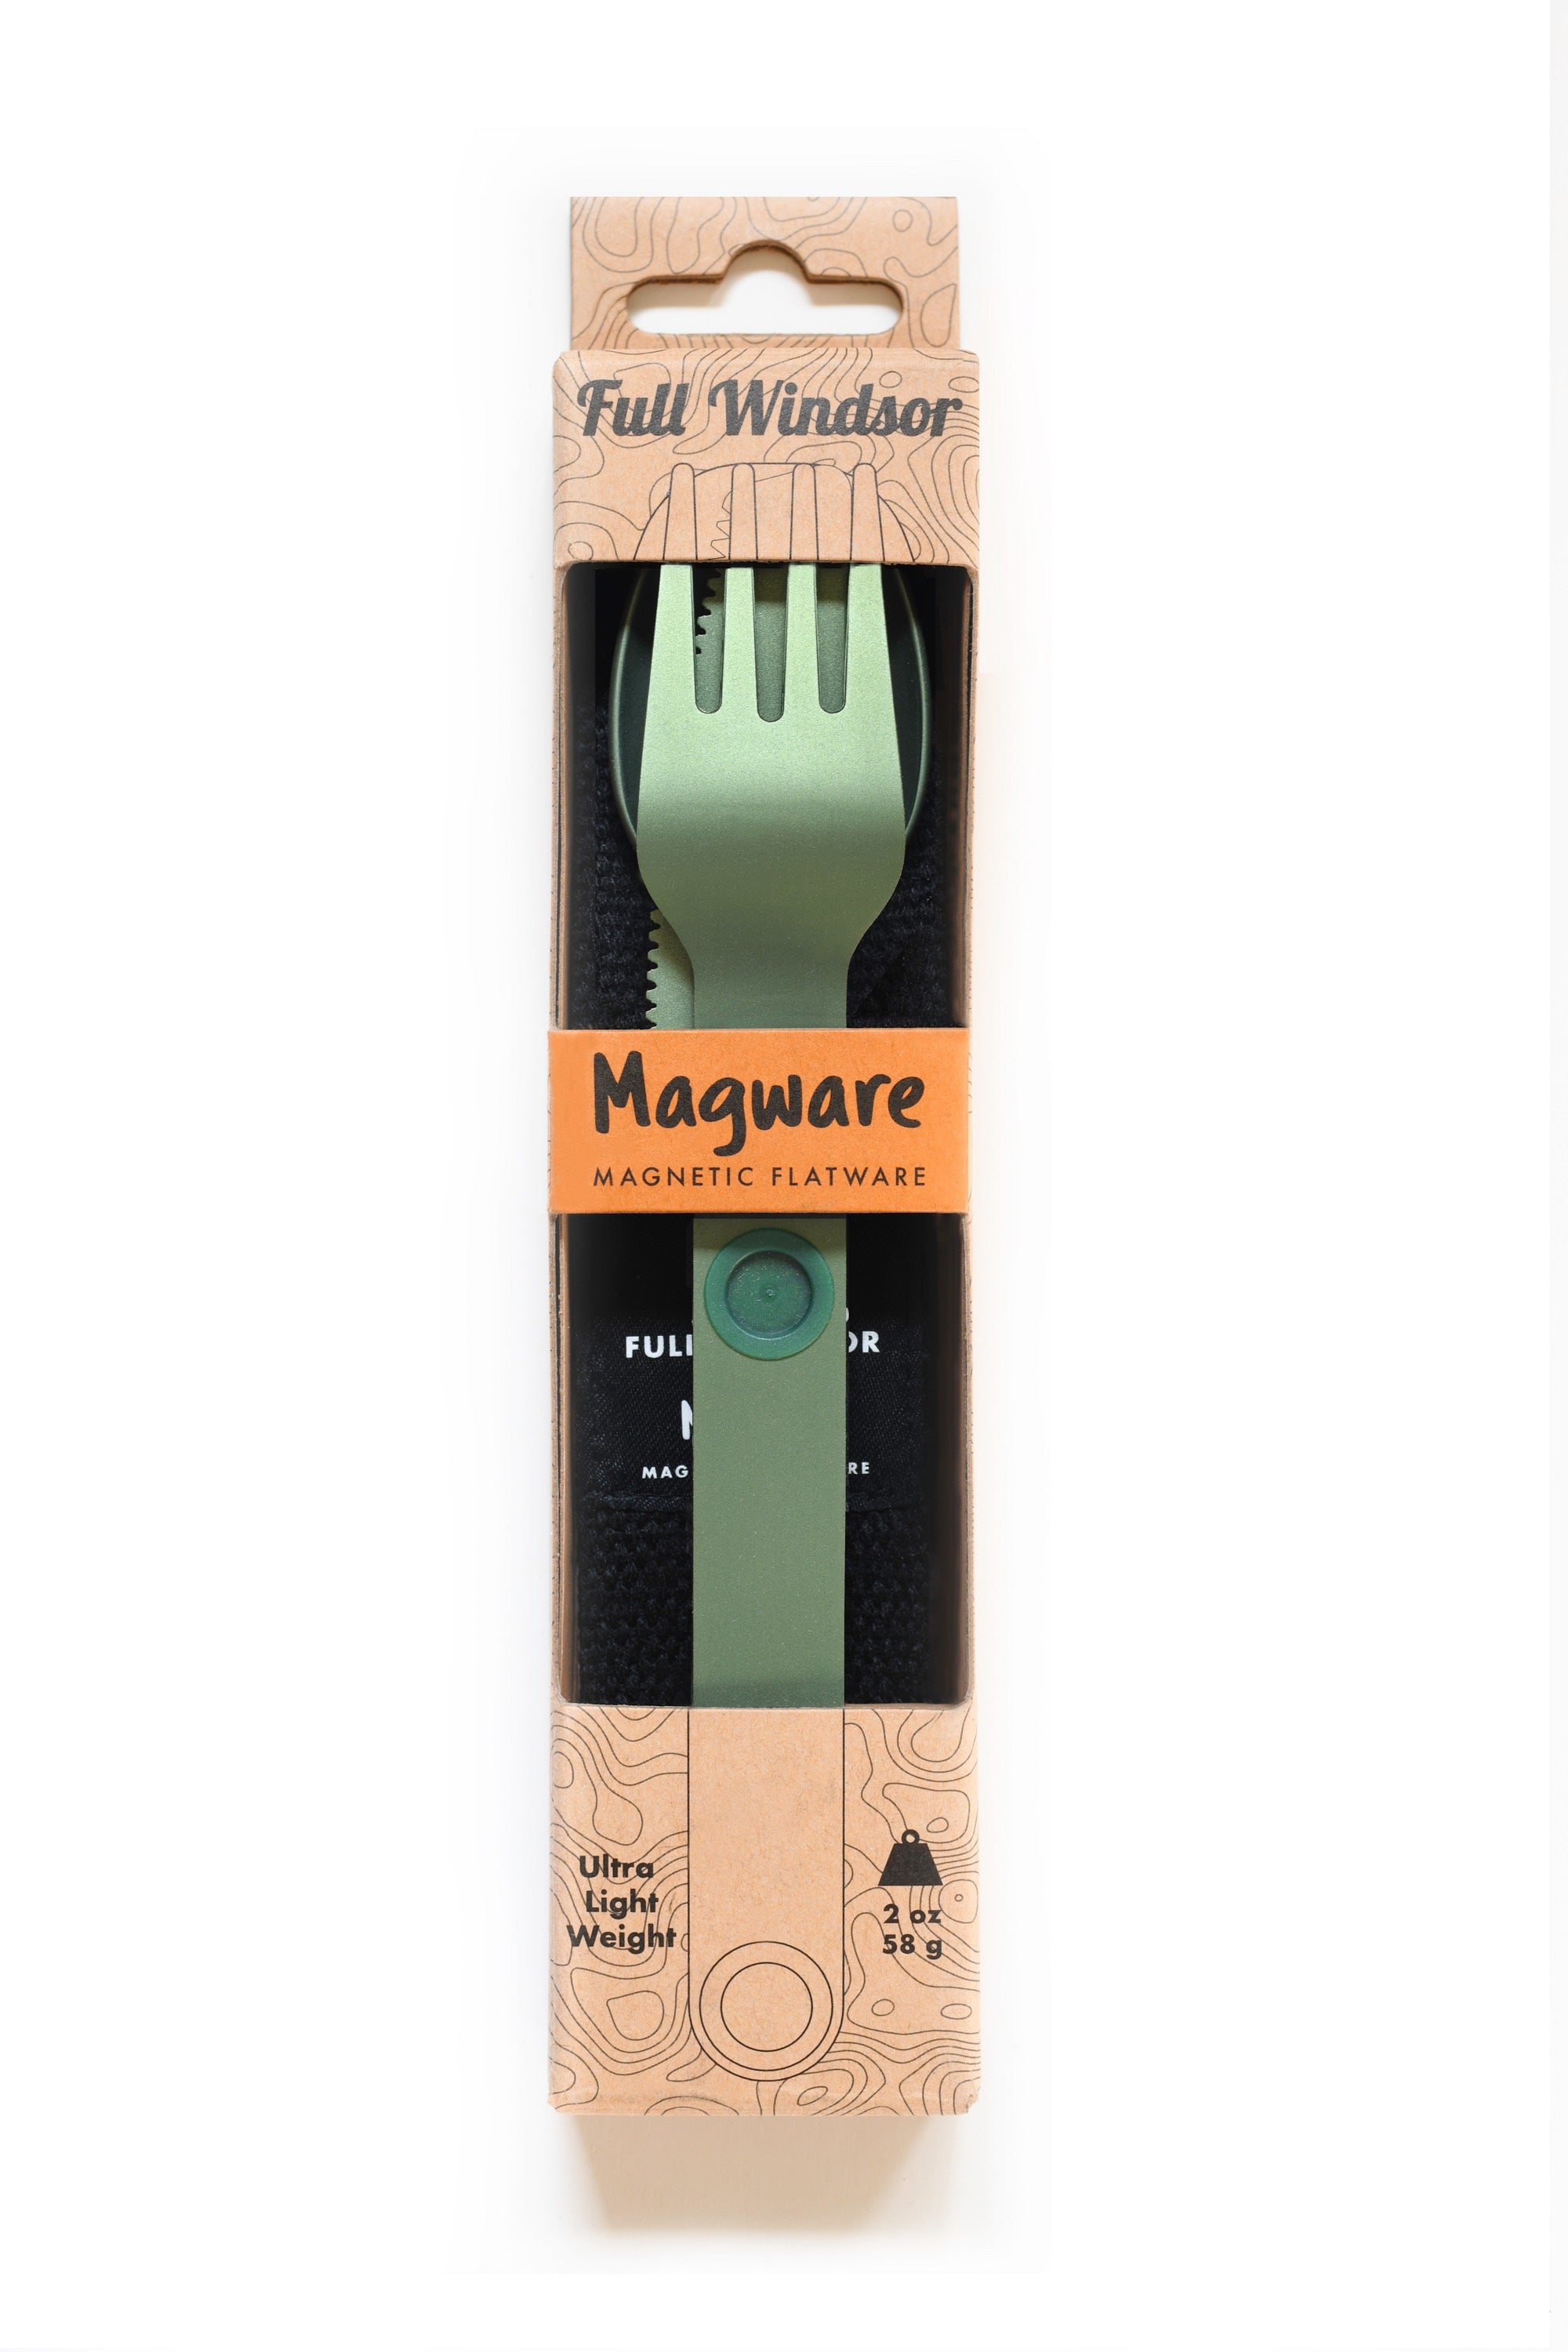 Full-Windsor Magware (green)